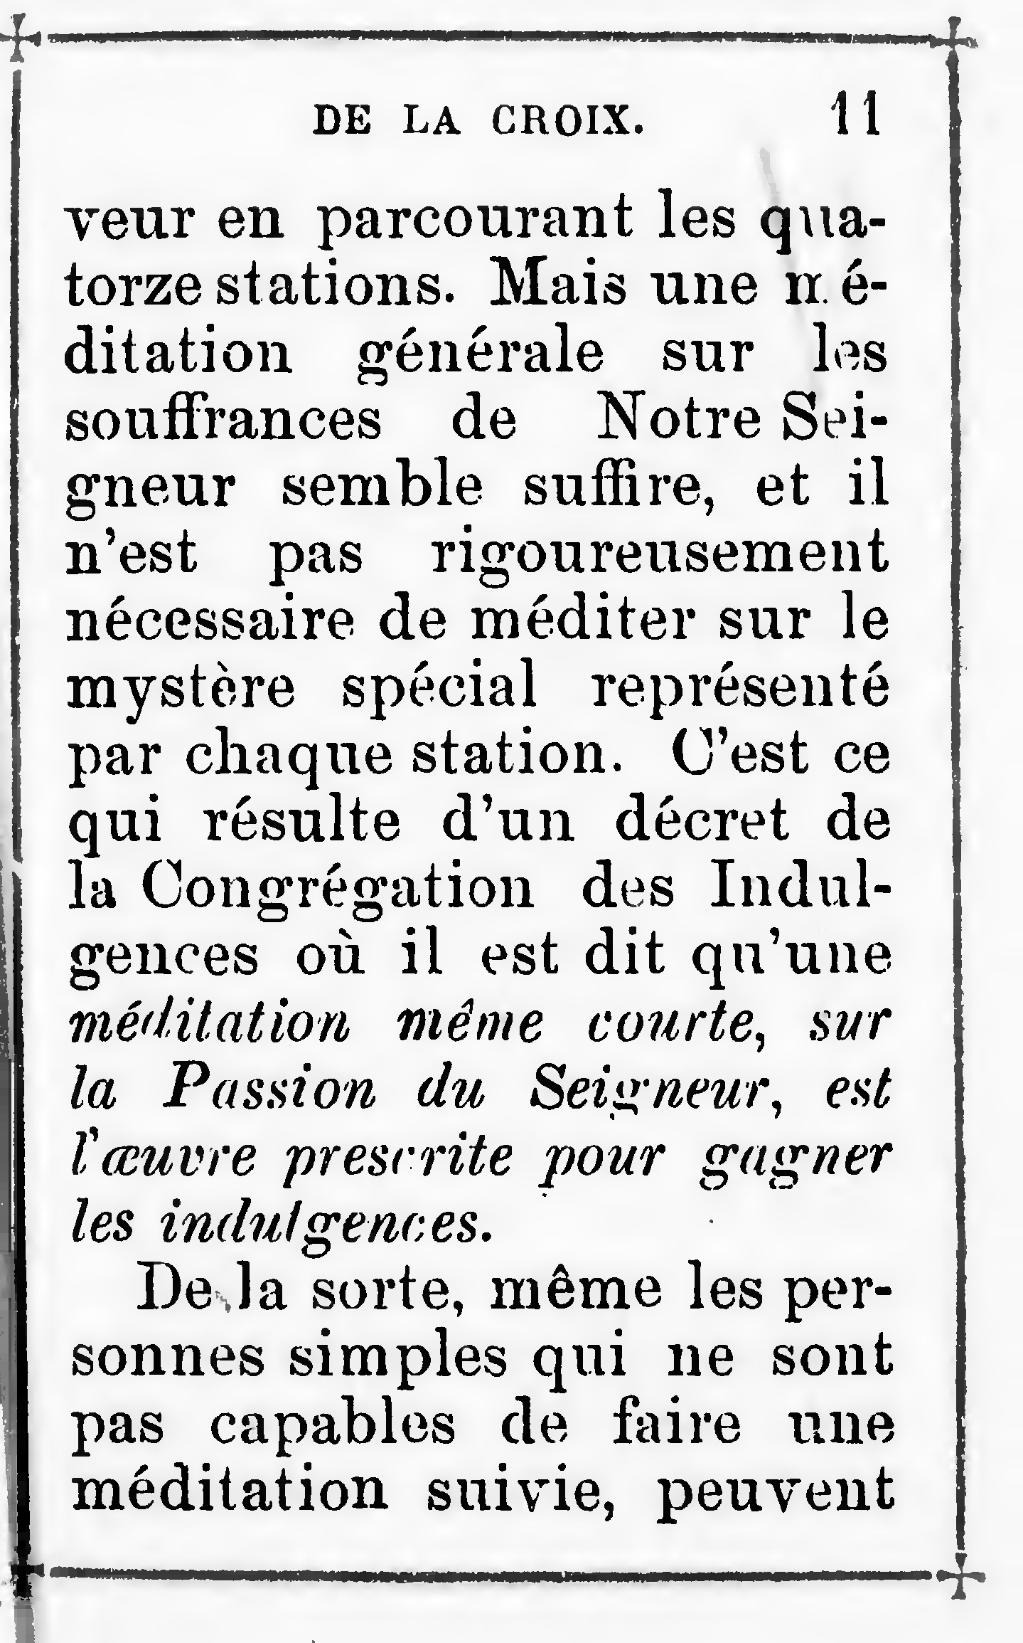 Pagerouthier Nouveau Chemin De La Croix 1891djvu13 - 